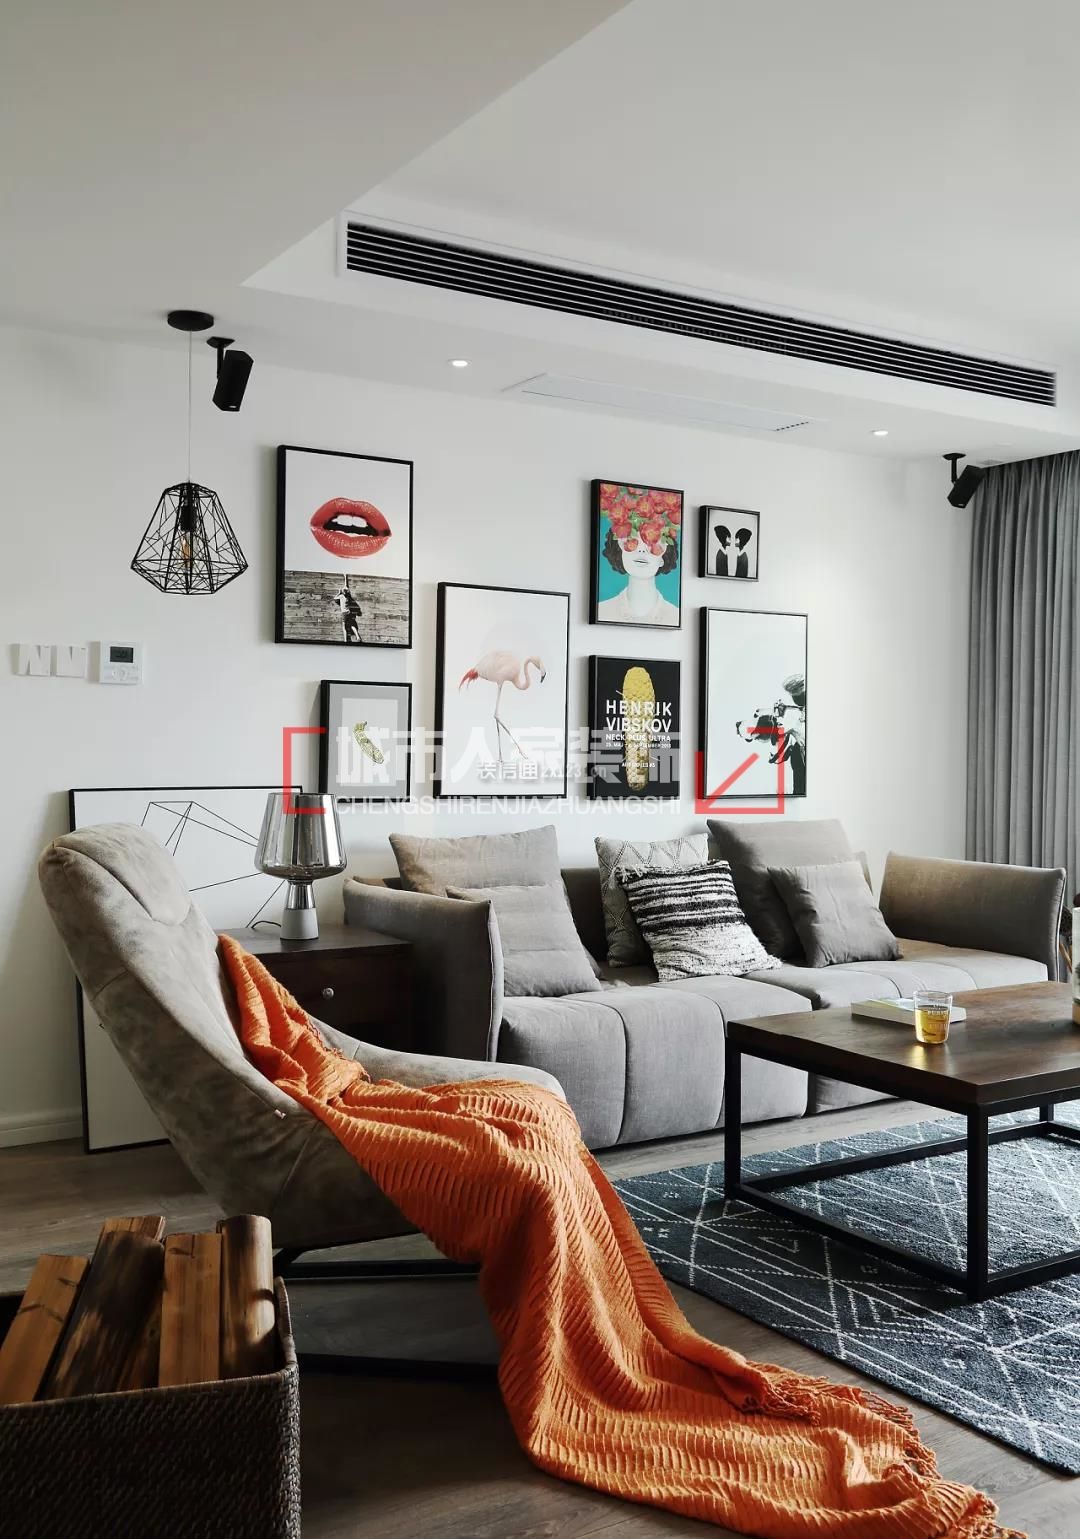 简约北欧风格145平米四居客厅灰色沙发设计图片